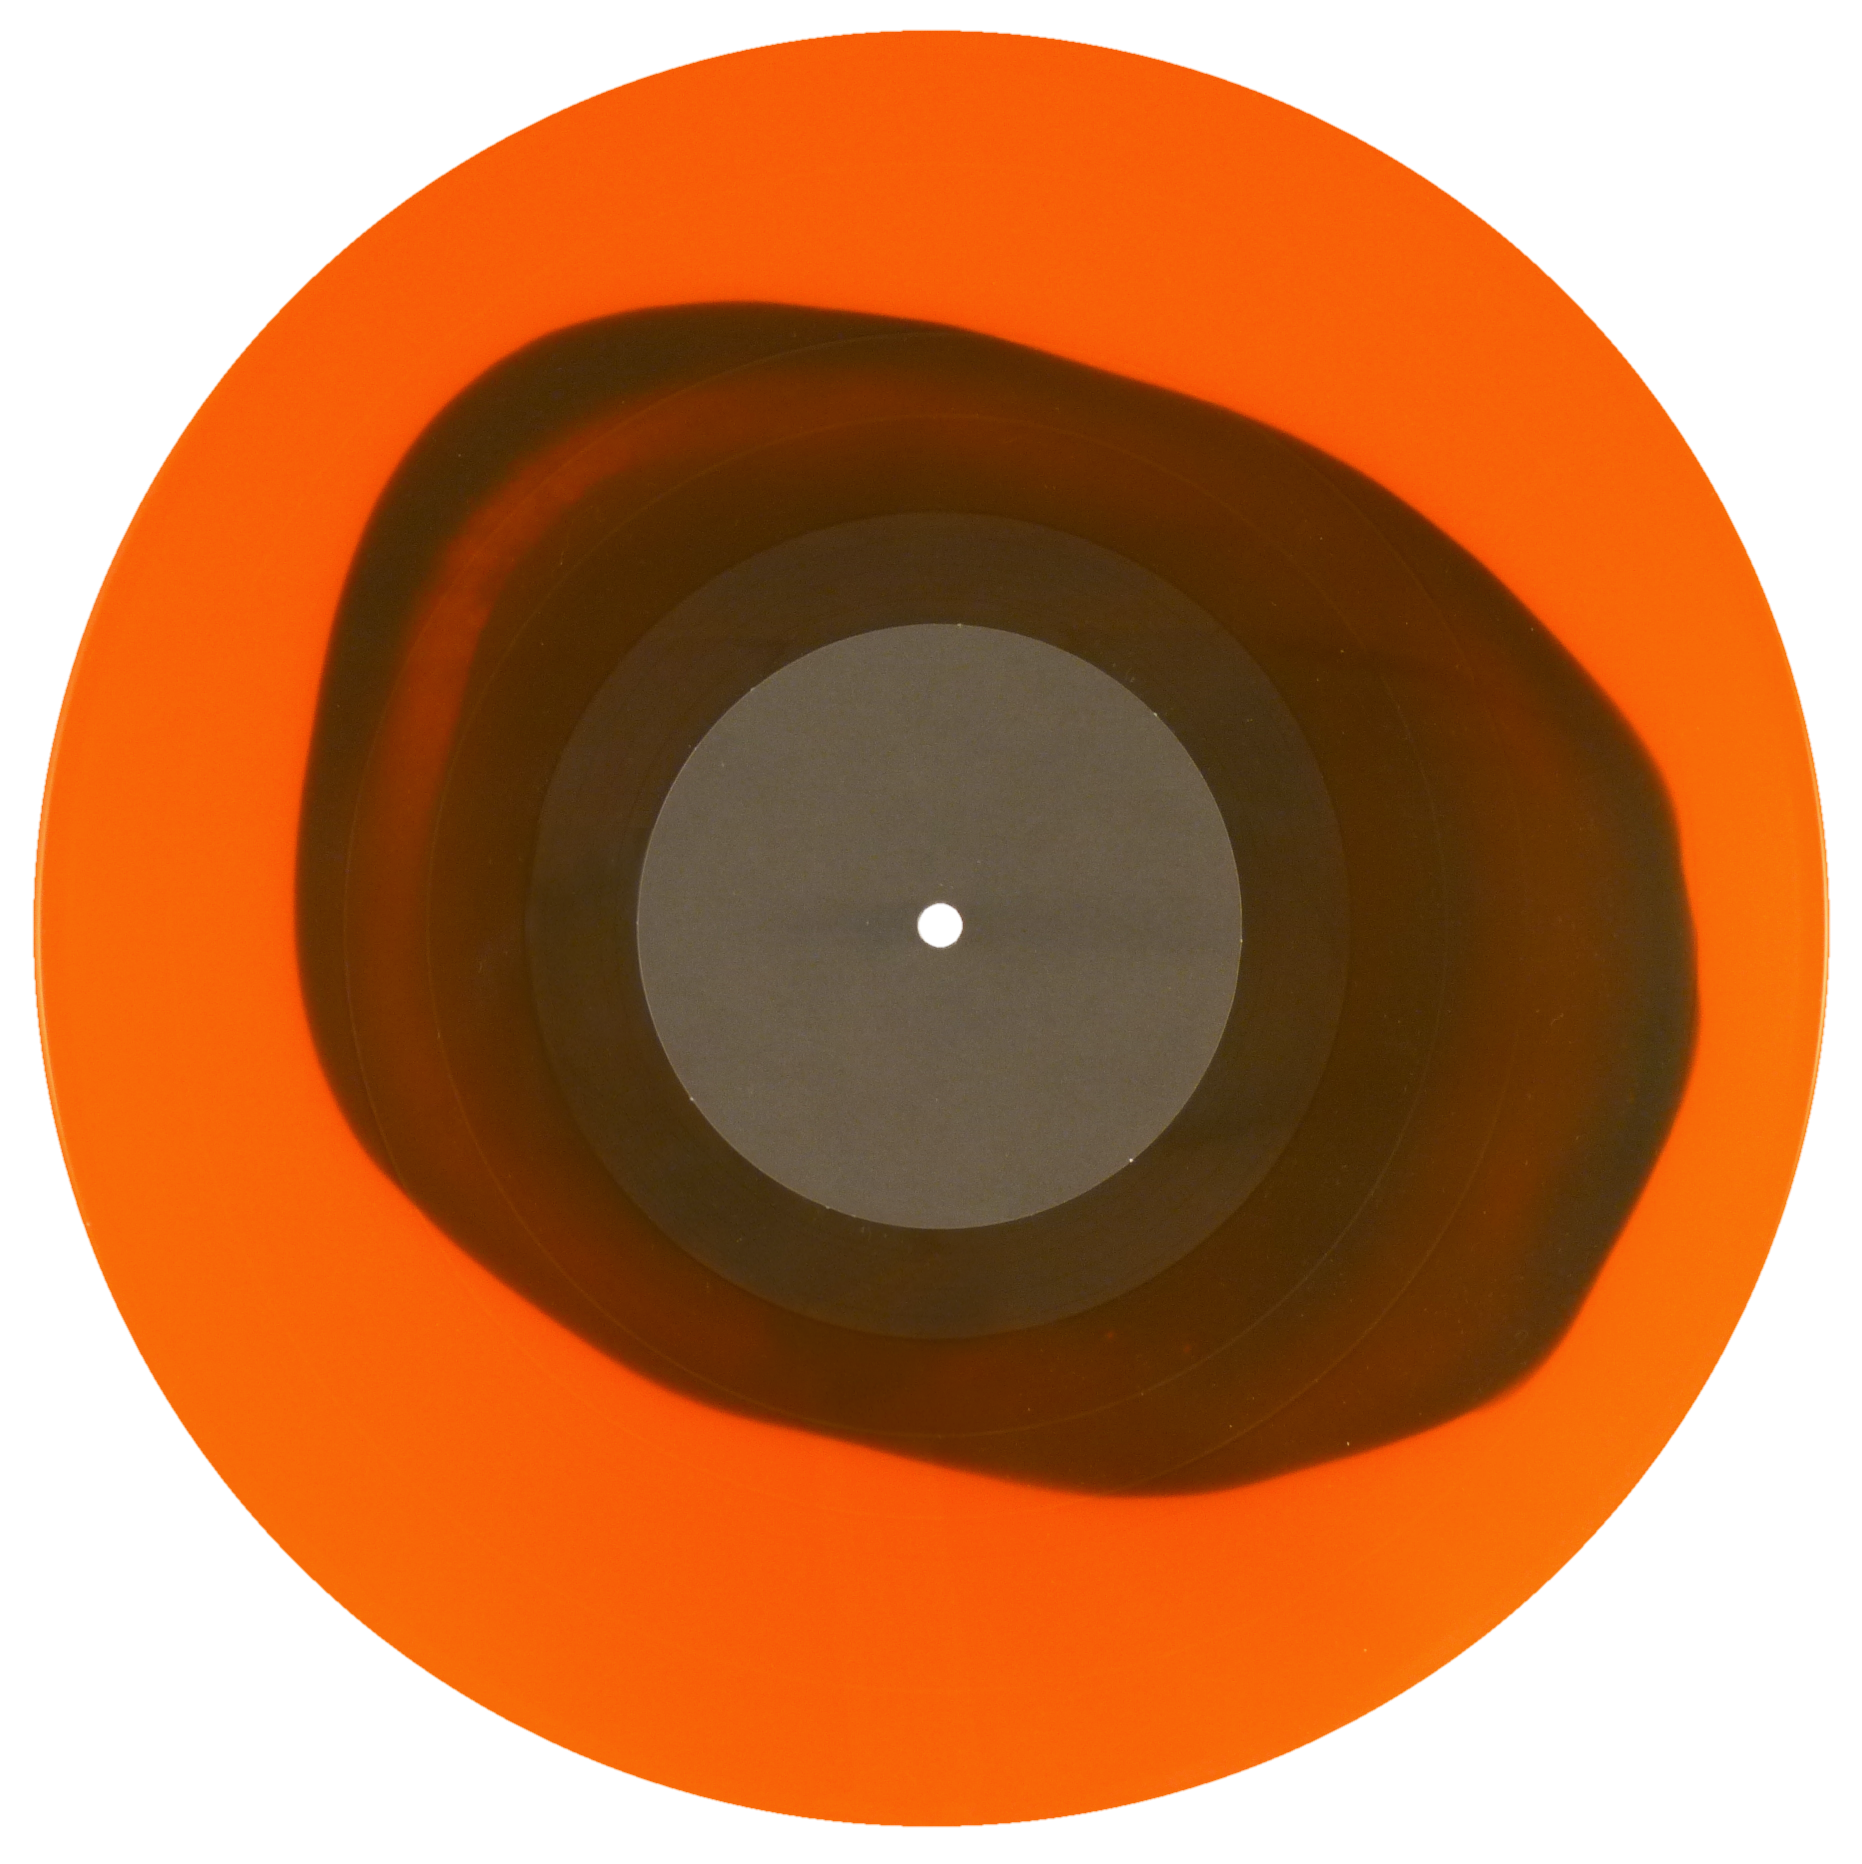 22_ colored record